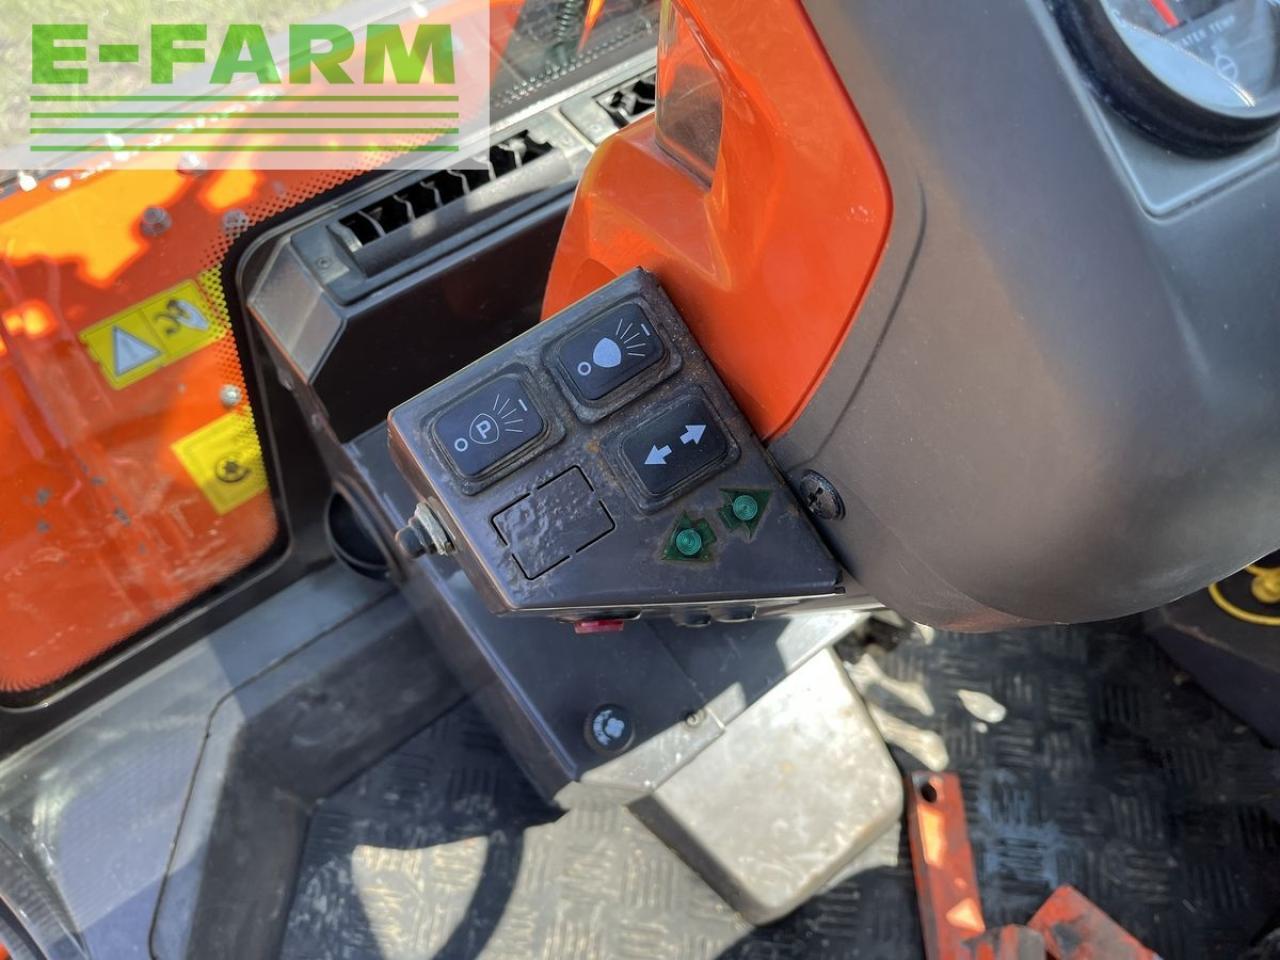 Farm tractor Husqvarna p525 d mit kabine und schleglmäher: picture 17